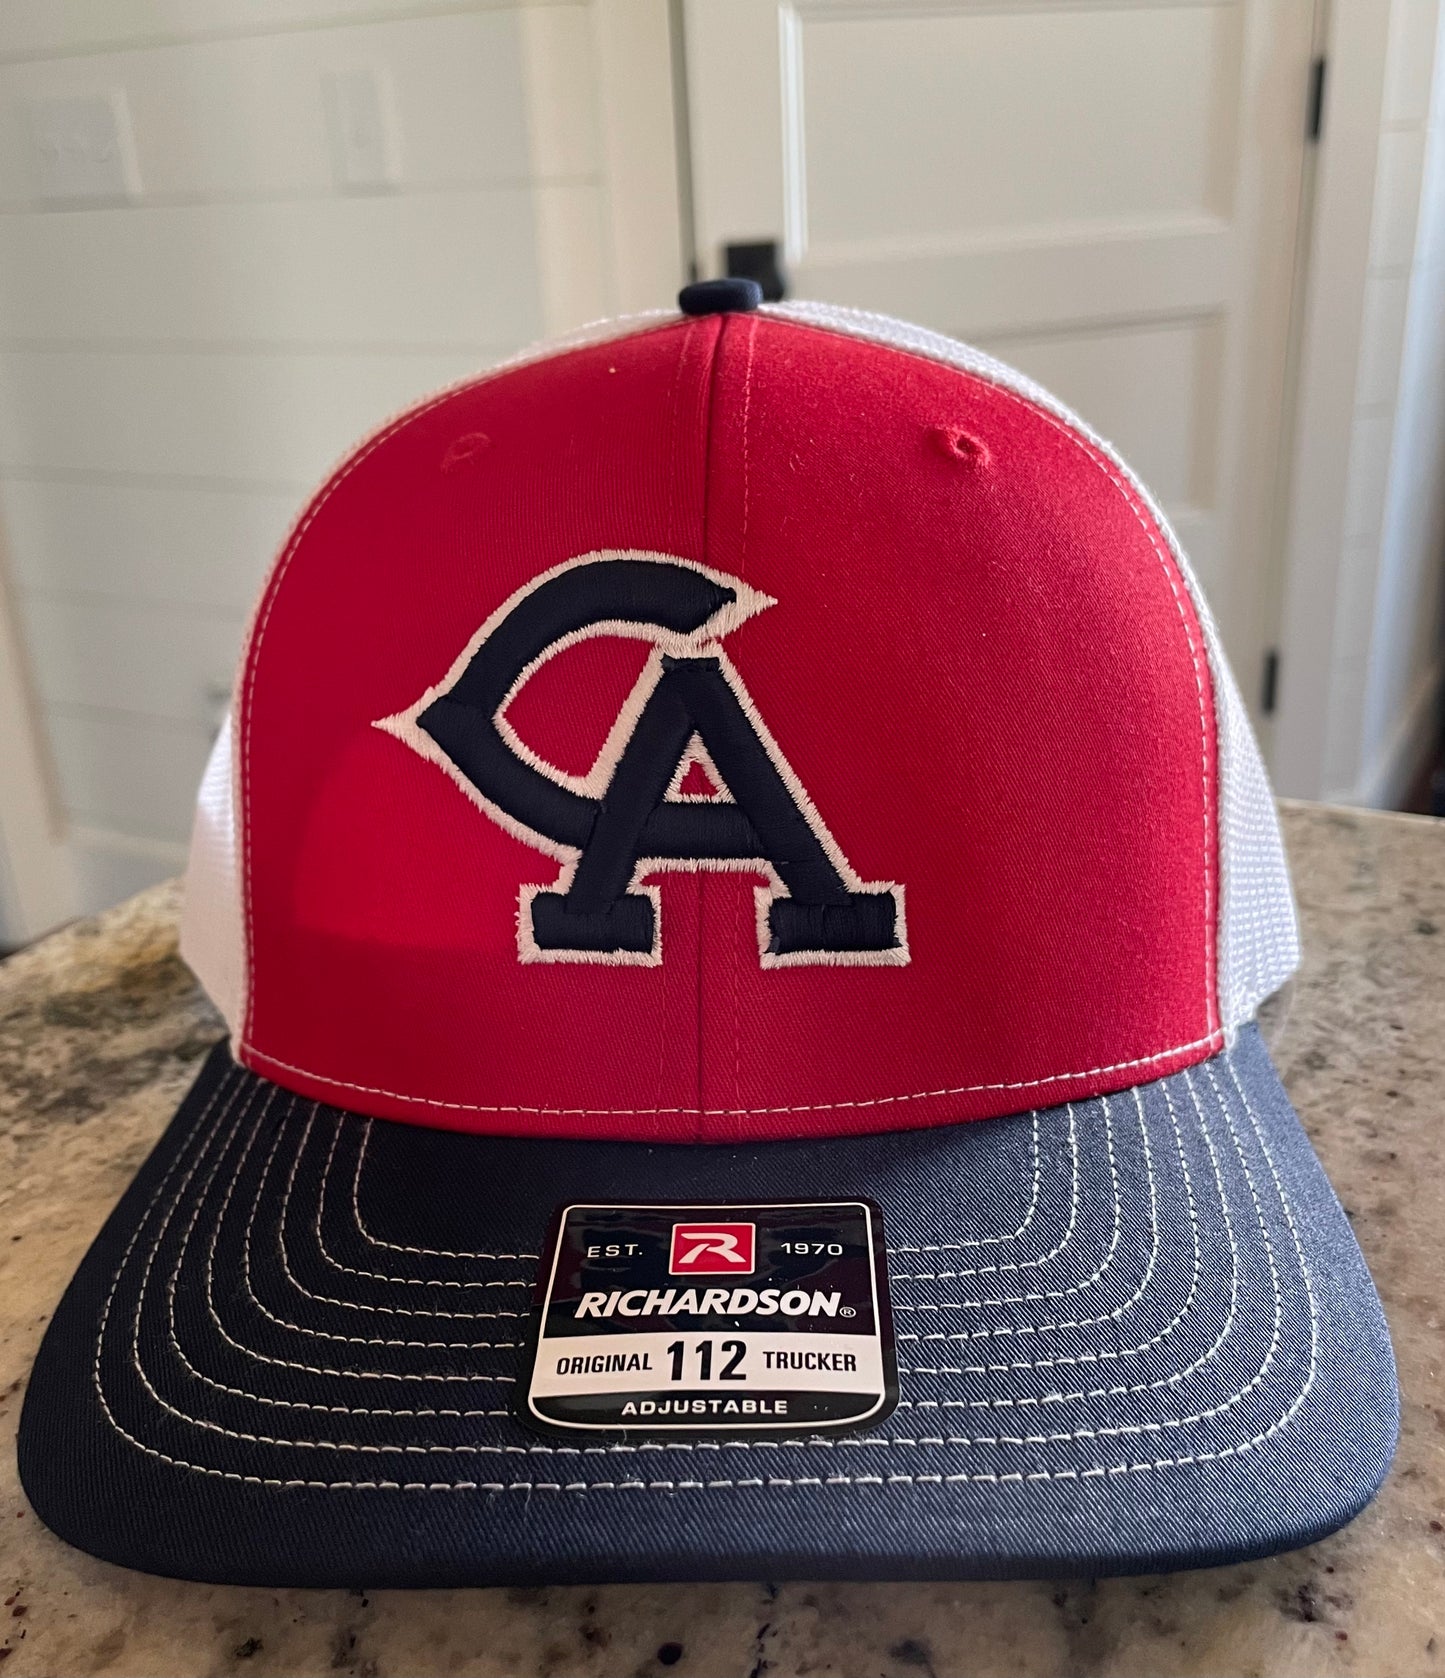 Richardson 112 Trucker Baseball Caps